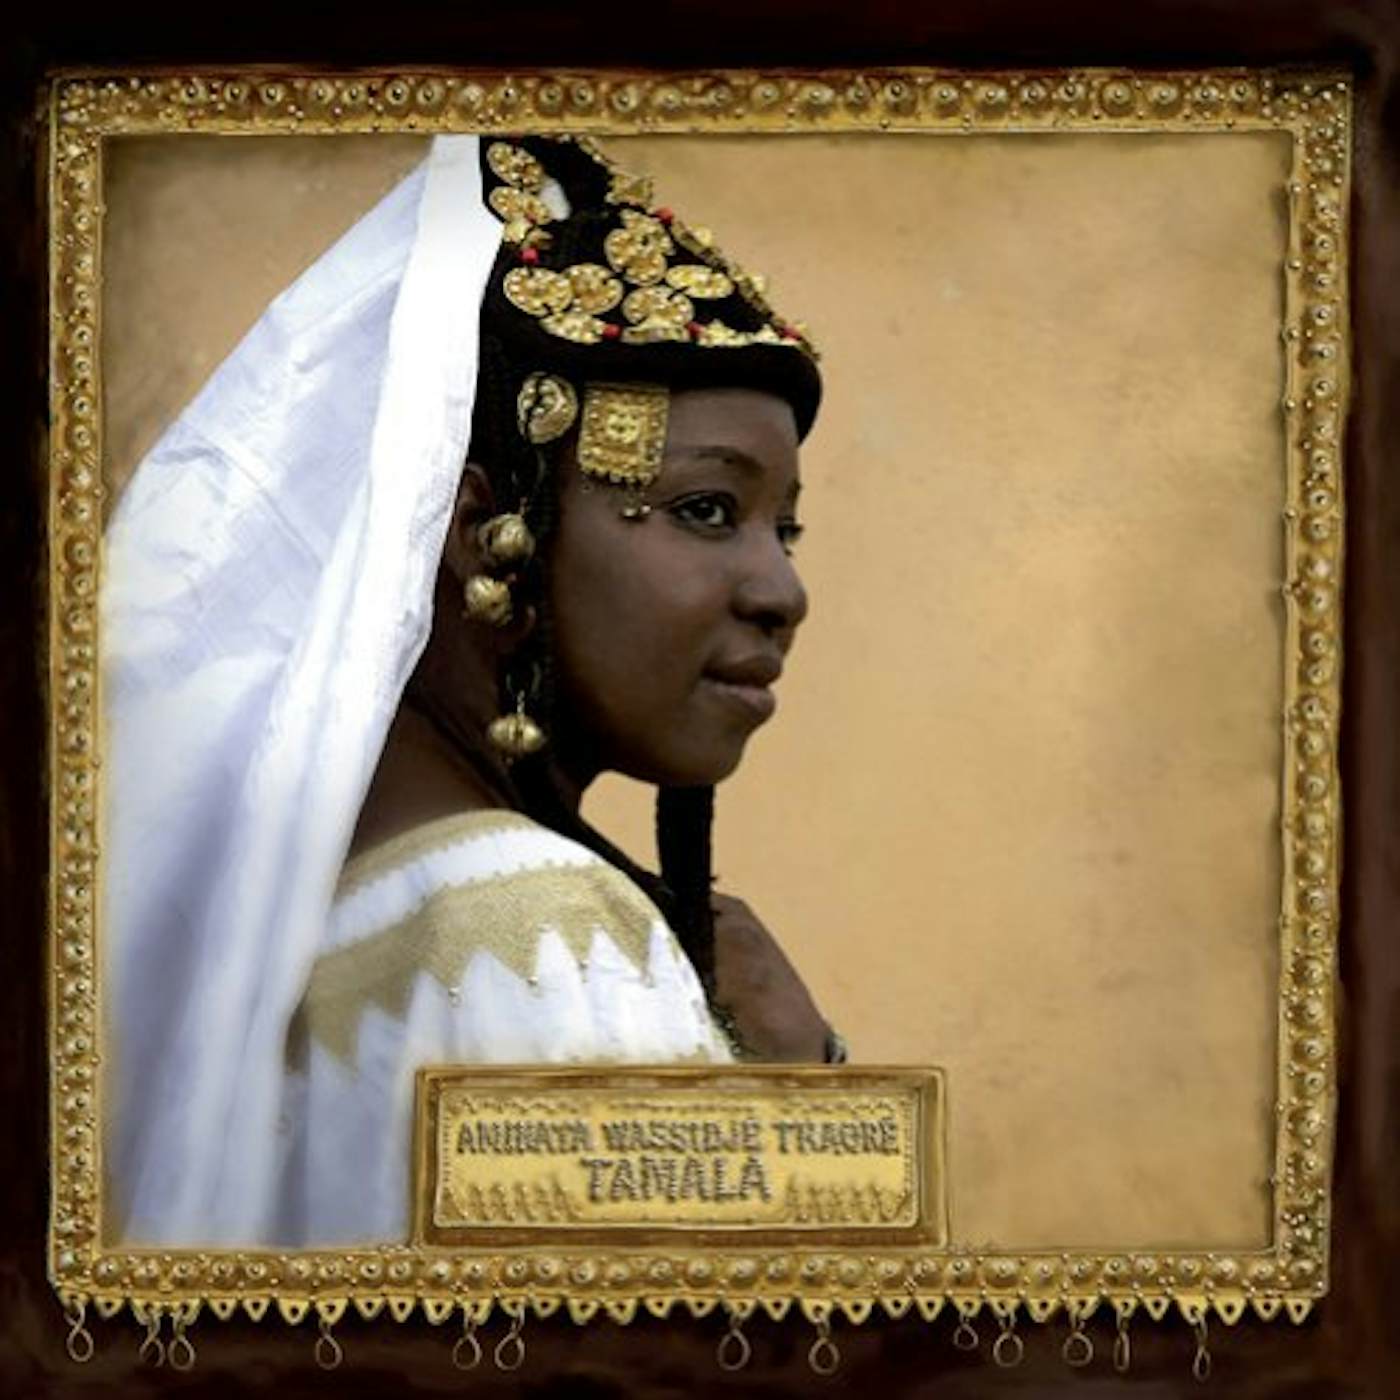 Aminata Wassidjé Traoré Tamala Vinyl Record